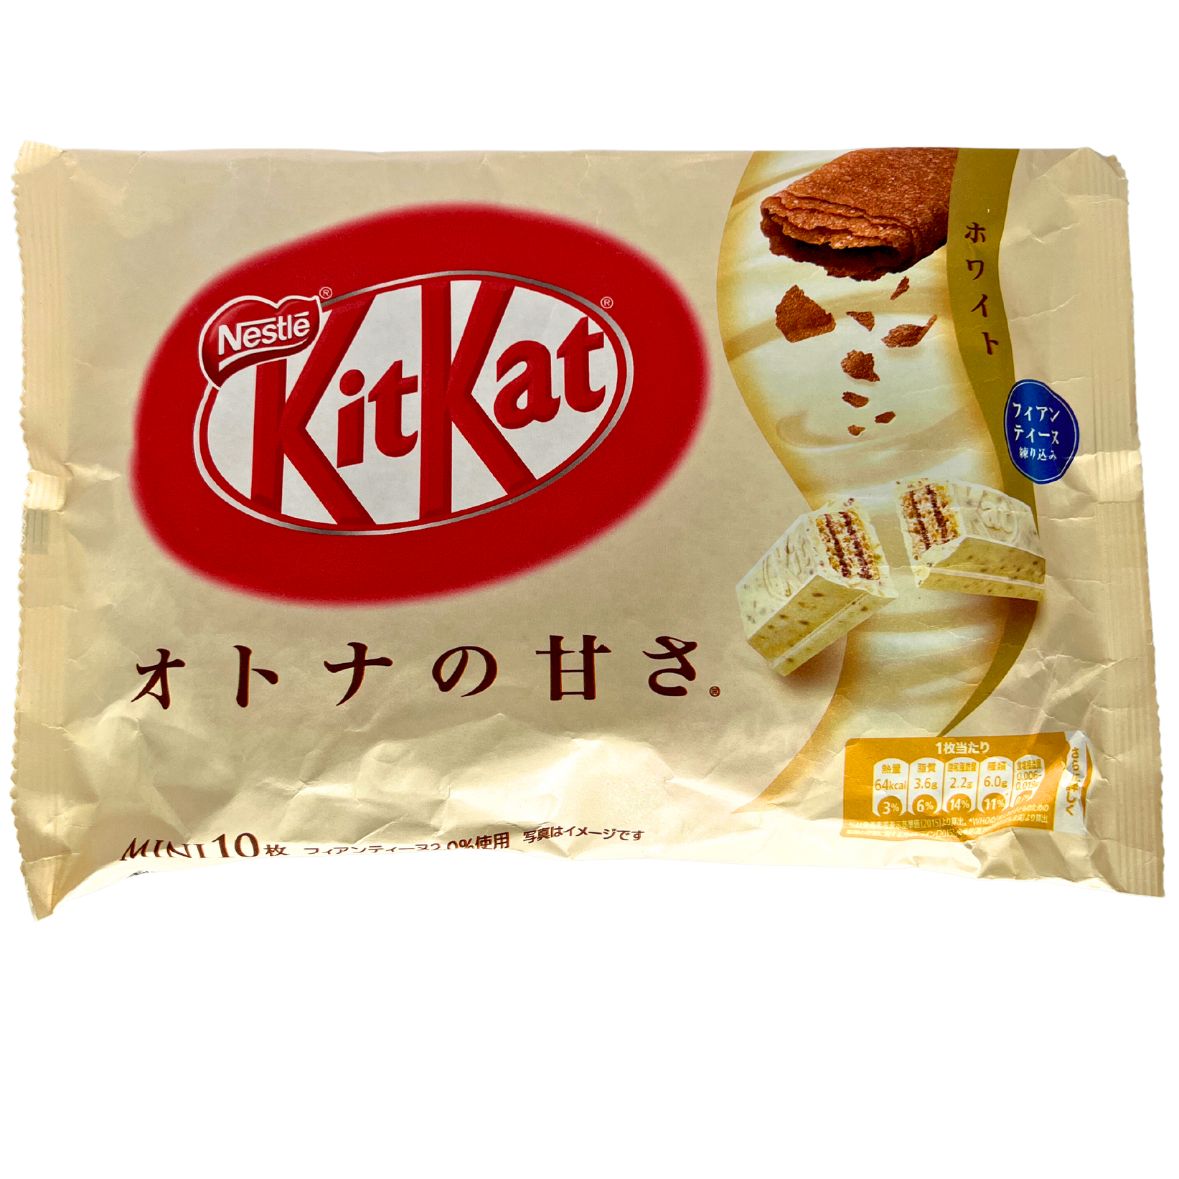 KitKat Crepe